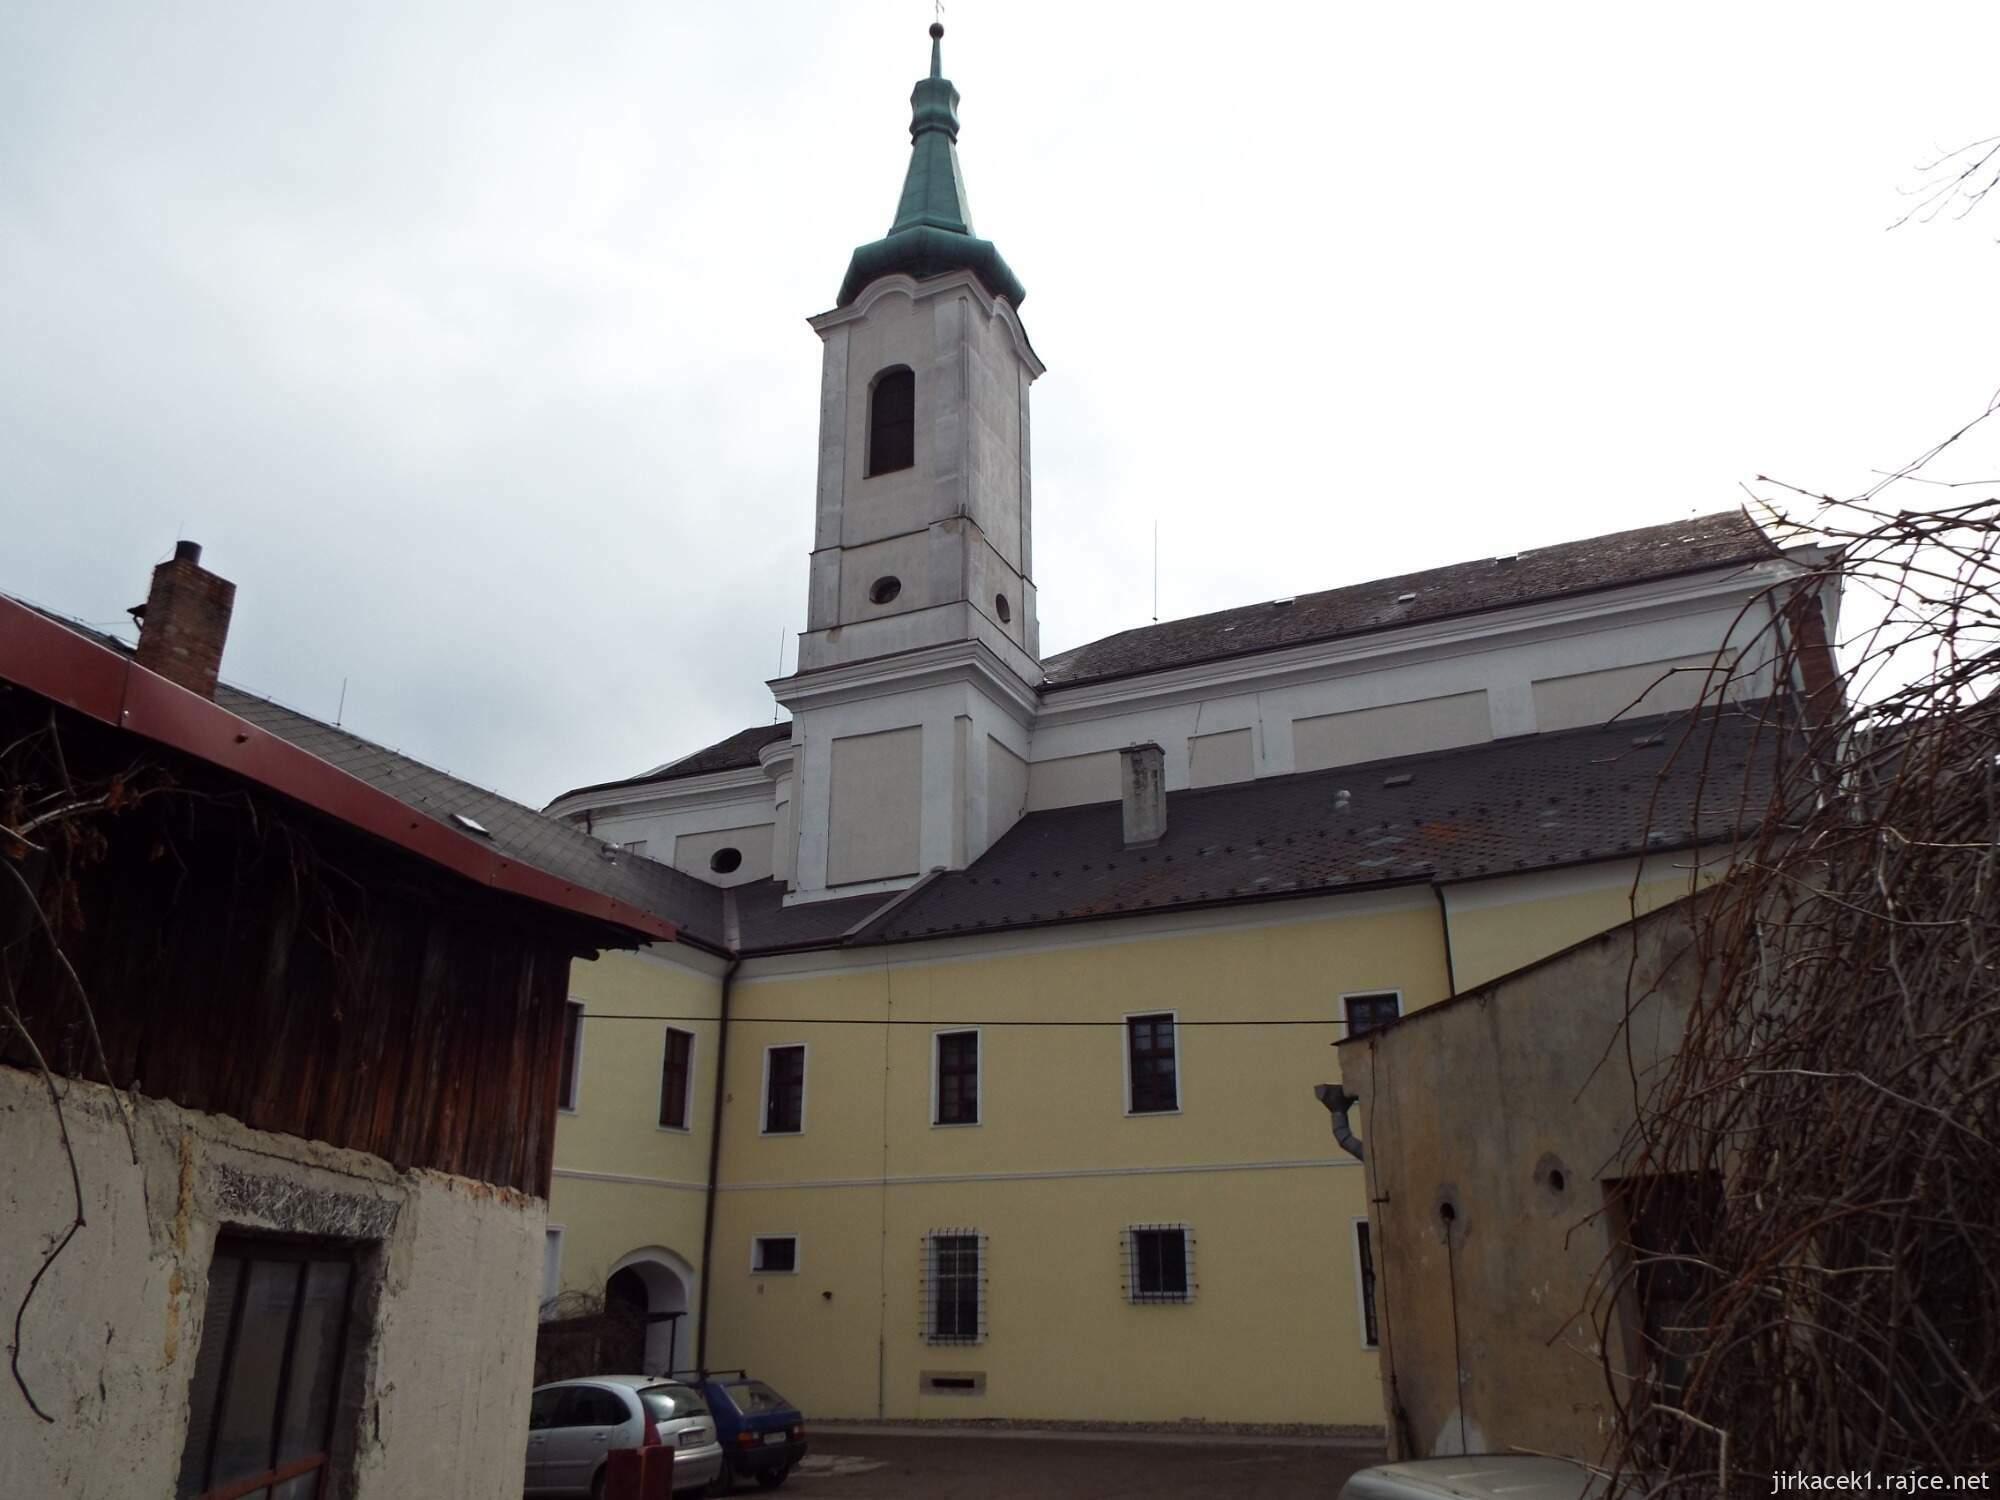 06 - Jevíčko - Kostel Nanebevzetí Panny Marie s klášterem Augustiánů 09